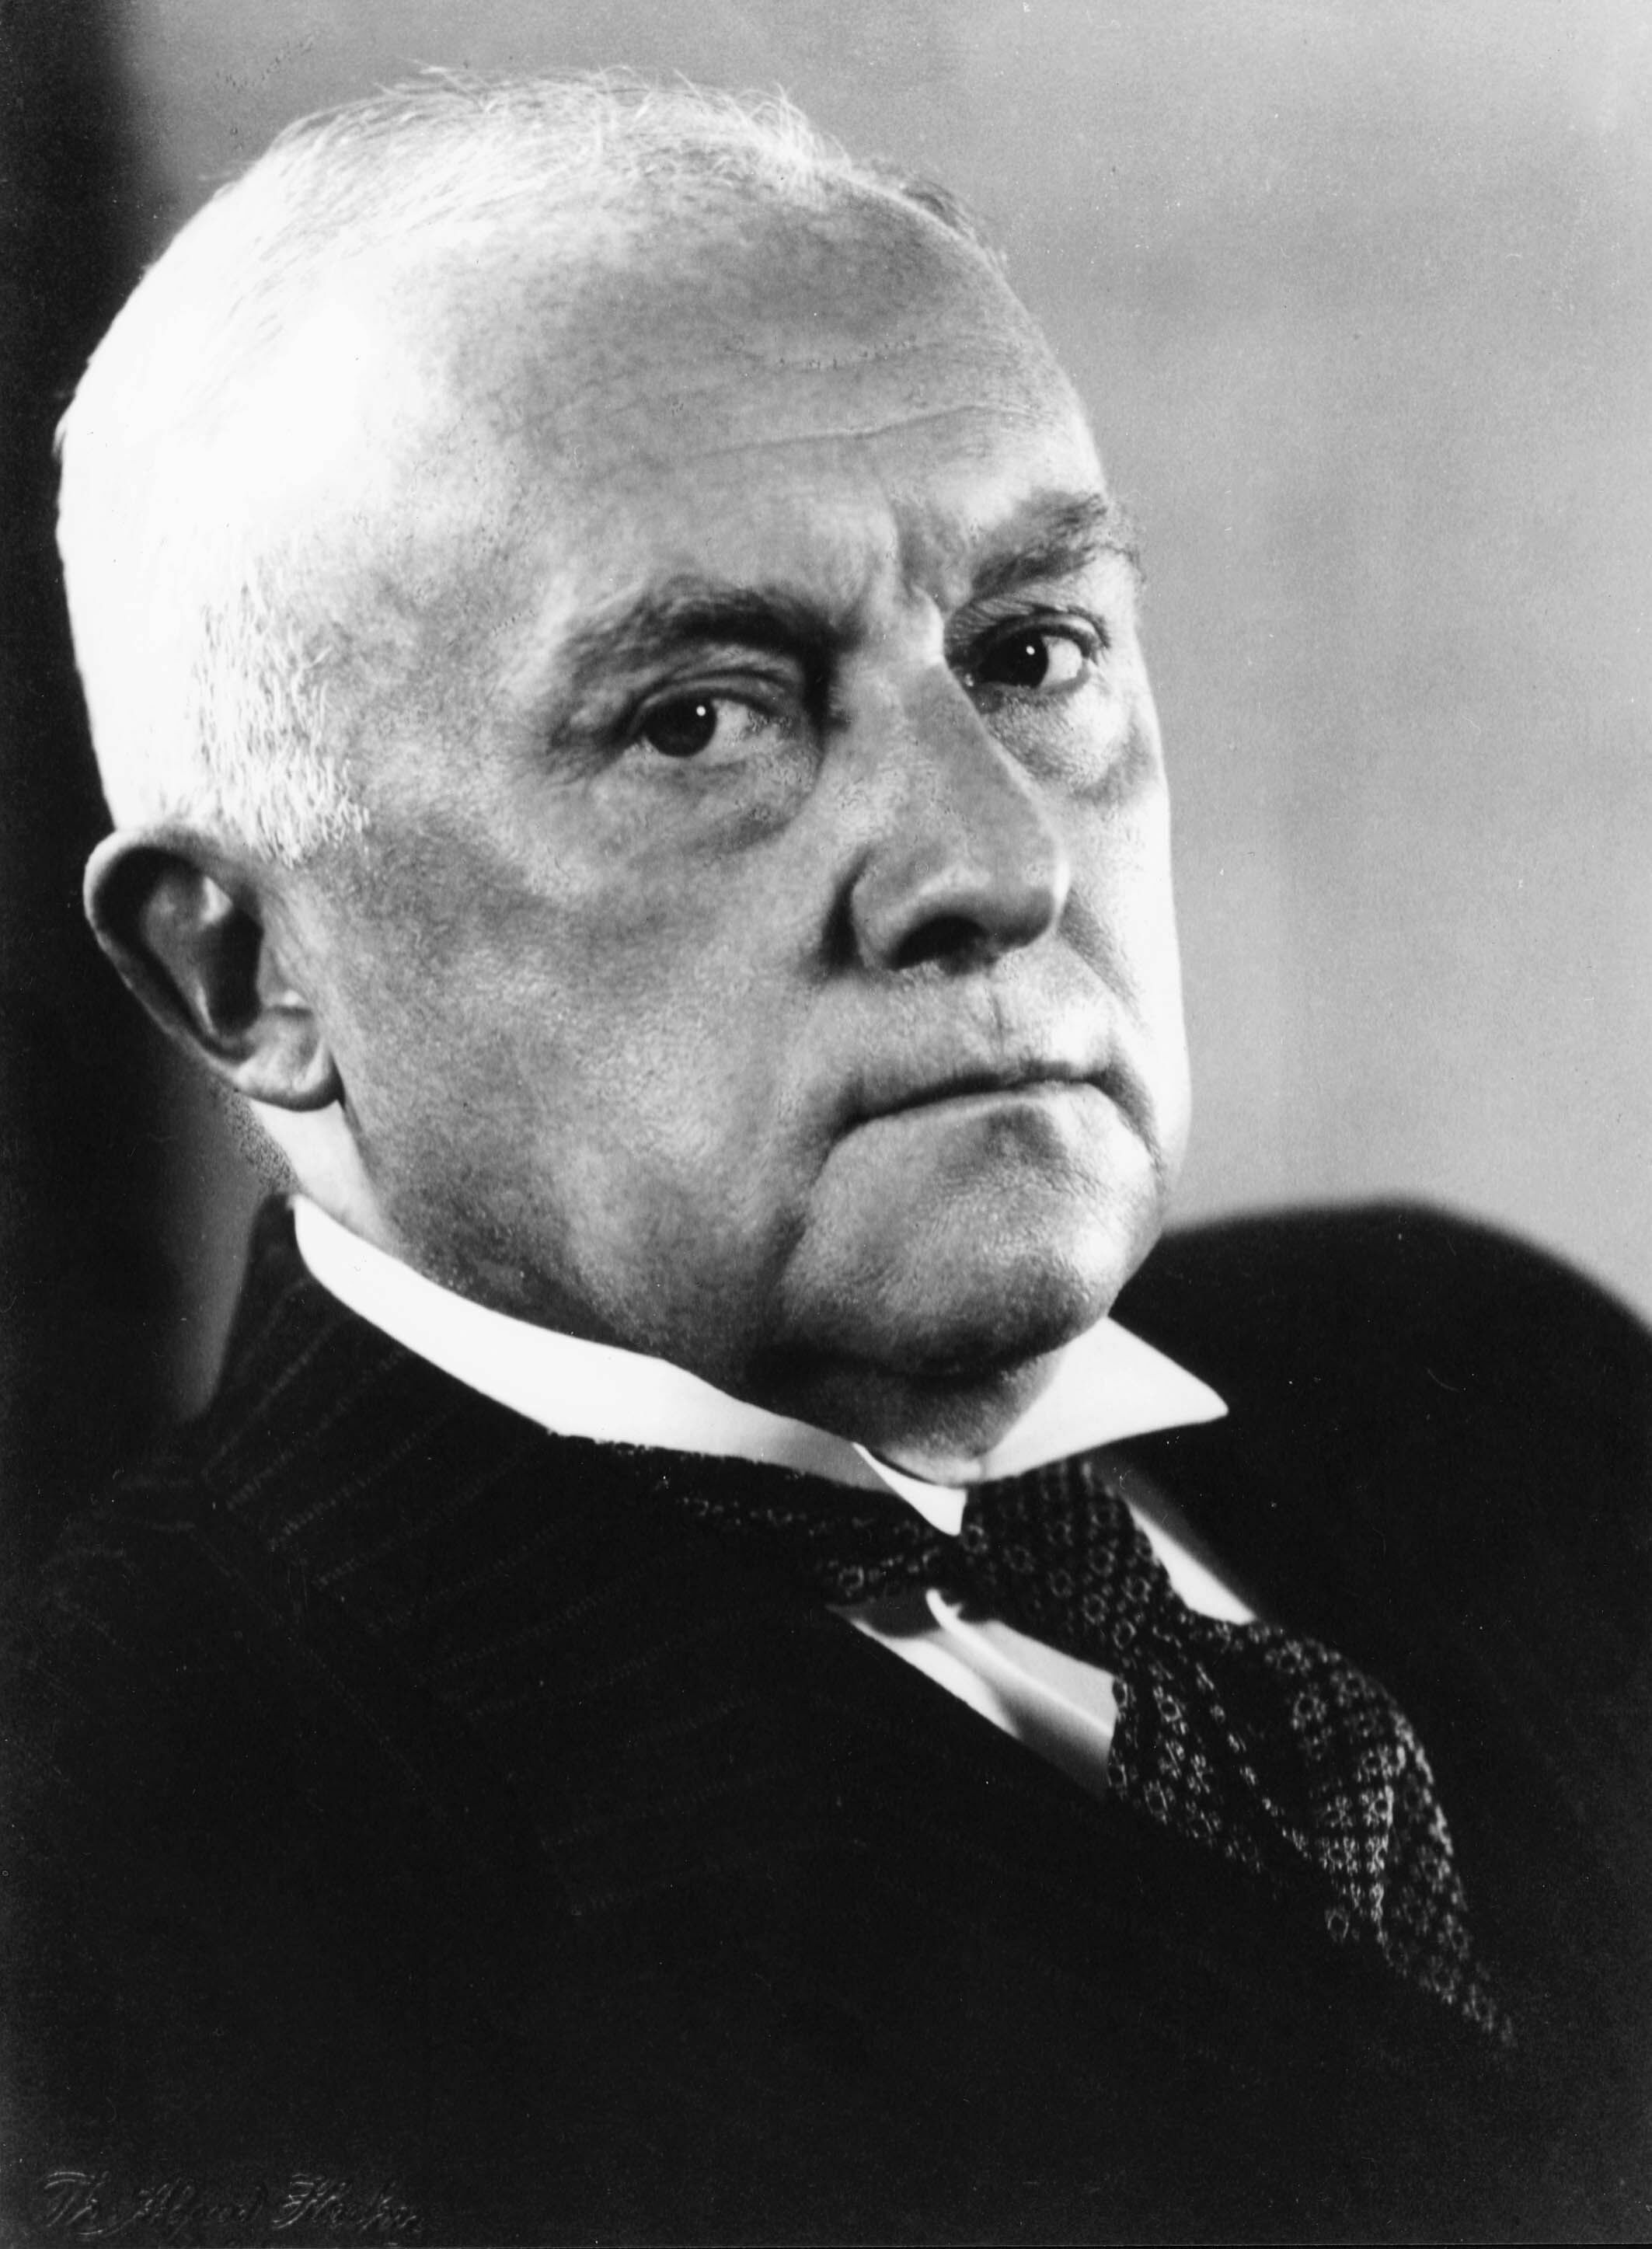 DKW-Gründer Jörgen Skafte Rasmussen (1878 - 1964)